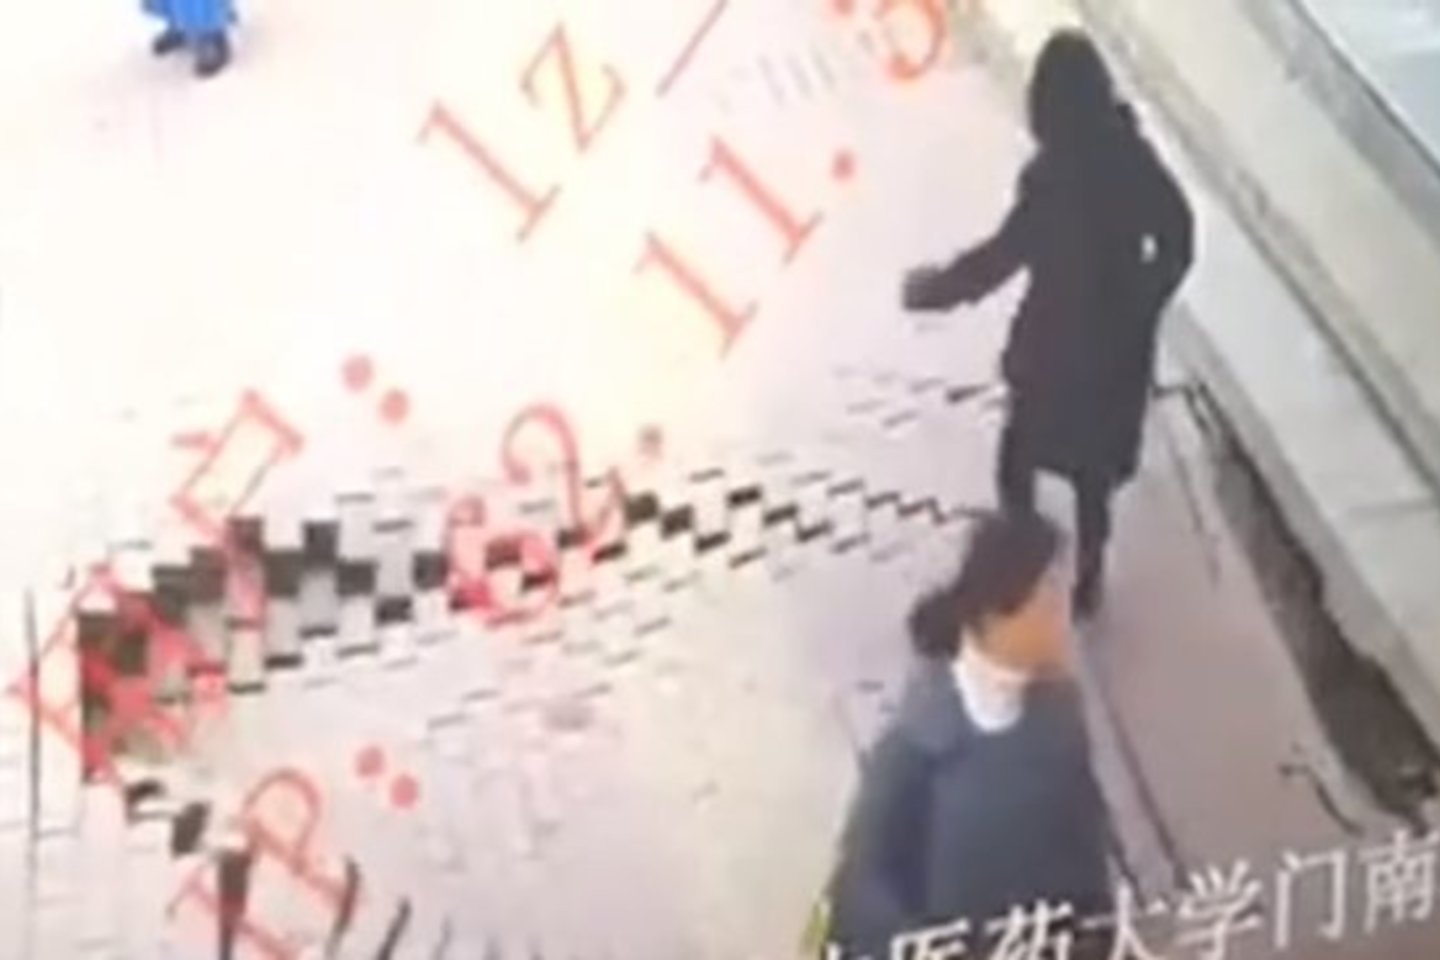  Landžou mieste Kinijoje vienoje gatvėje prasivėrusi smegduobė tiesiog prarijo šaligatviu ėjusią moterį.<br> Stebėjimo kamerų nuotr.